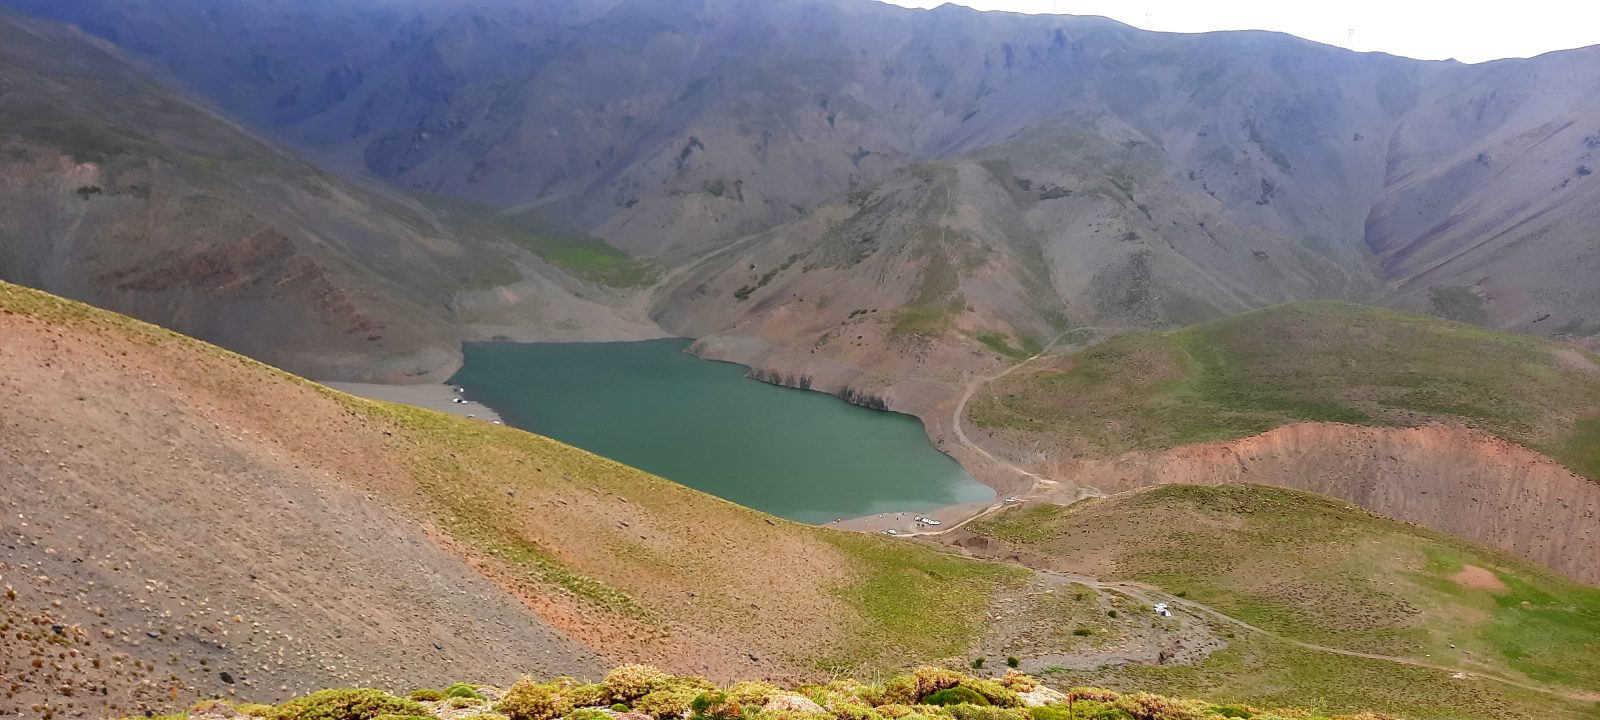 دریاچه چشمه سبز گلمکان مقصدی مناسب برای گردشگری در مشهد 